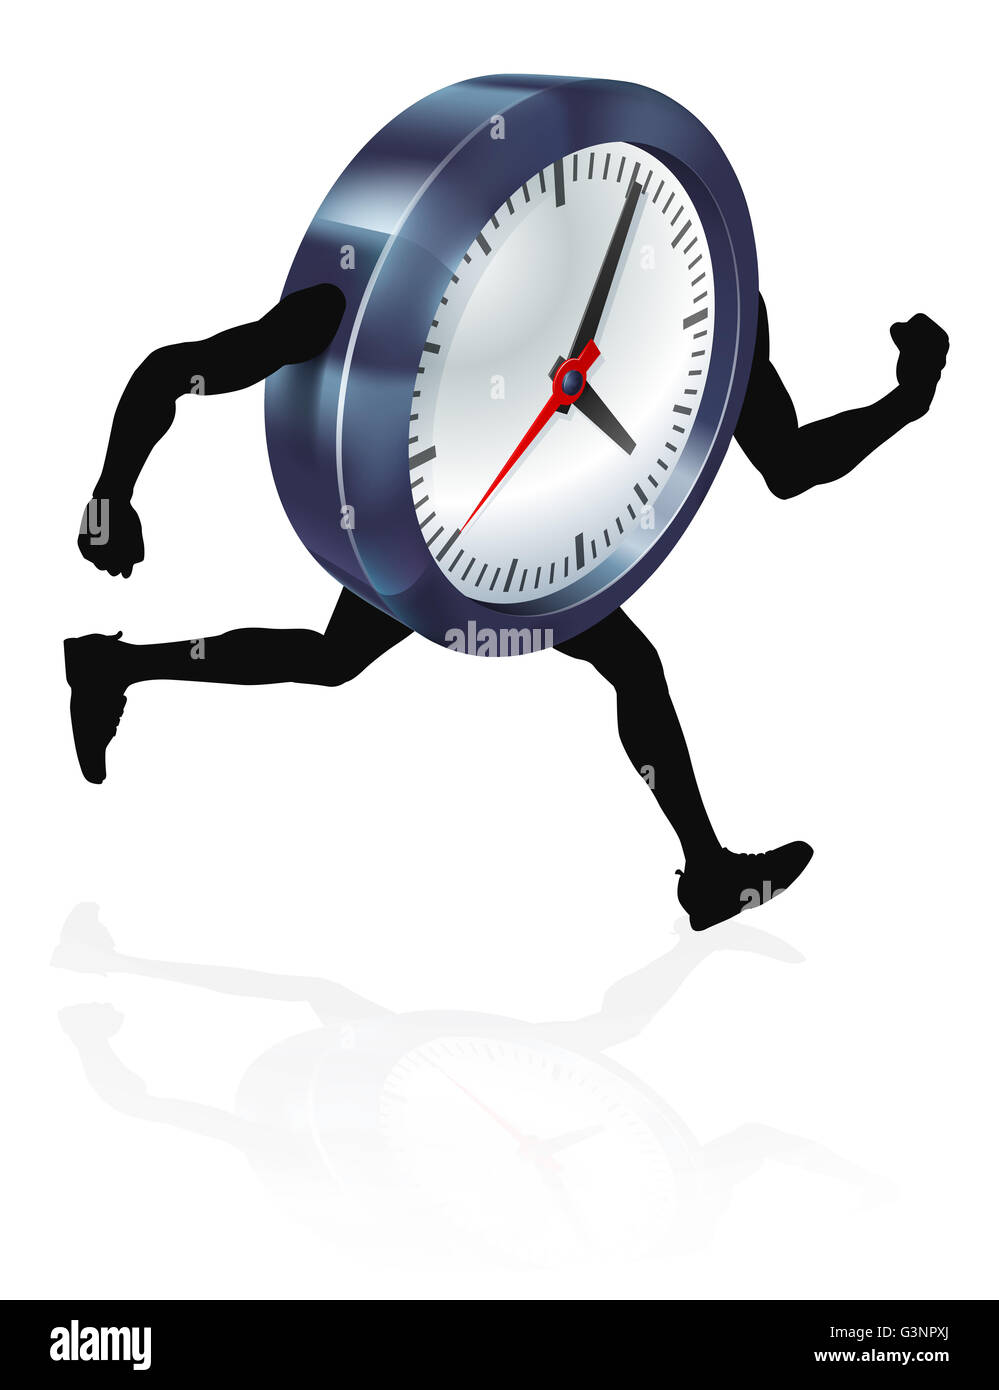 Un caractère d'horloge tourne, concept pour la pression du temps ou à court de temps, ou d'exécution contre la montre Banque D'Images